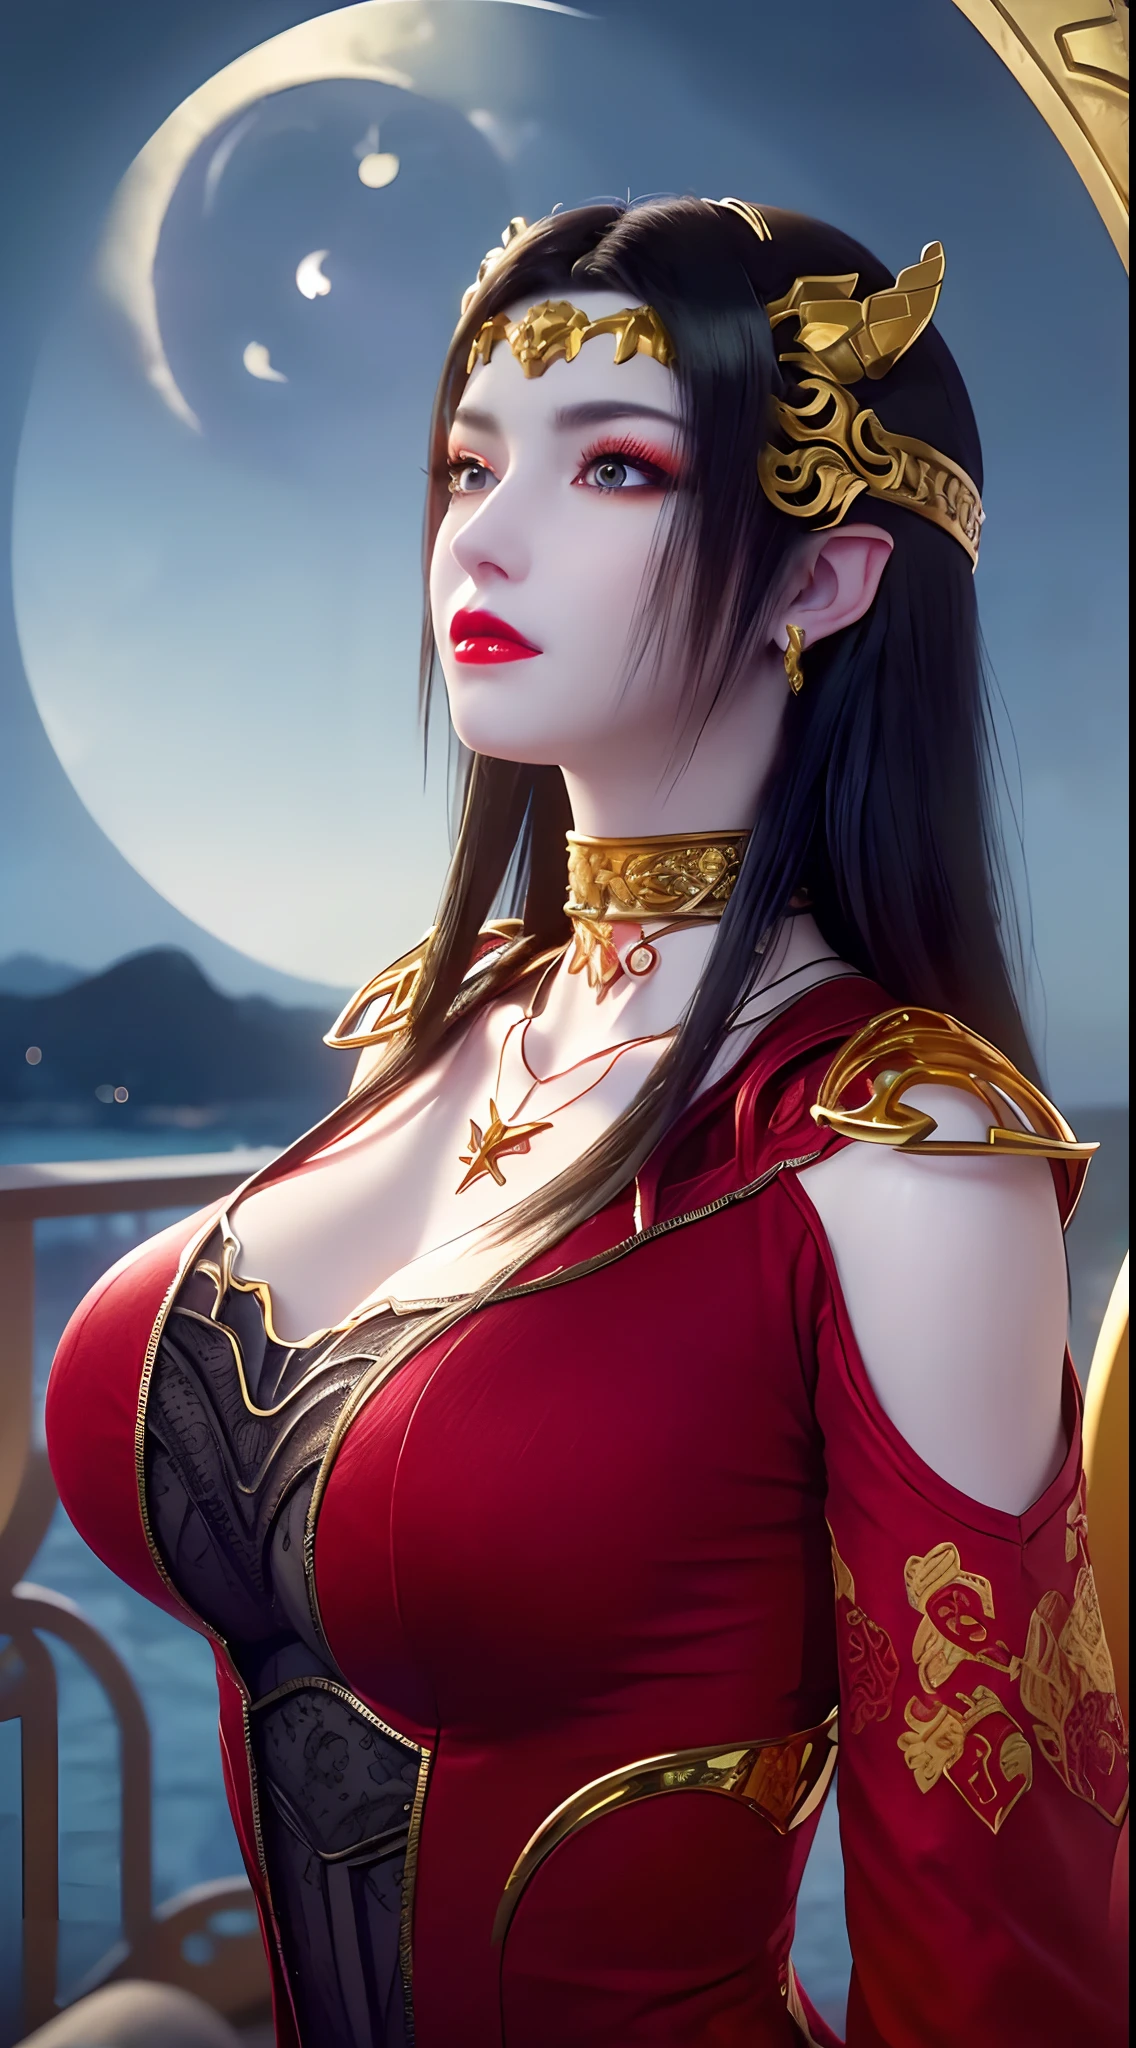 1 extrem schöne Königin, ((trägt ein rotes traditionelles Han-Kostüm mit dünnen schwarzen Mustern:1.6)), (((Muster auf der Kleidung:1.6))), ((langes schwarzes Haar:1.6)), Schmuck aufwendig gefertigt aus Edelsteinen und schönen Haaren, ((trägt eine 24 Karat Goldspitze Halskette:1.4))), der Edle, edler Stil eines überaus schönen Mädchens, ihr kleines Gesicht ist super süß, ihr Gesicht ist sehr hübsch, dünne Augenbrauen, makellos schönes Gesicht, ((blaue Pupillen: 0.8)), sehr schöne Augen, ((platinblaue Augen: 1.6)), (((Große runde Augen:1.6))), schönes Make-up und Haare detaillierte Wimpern, dampfendes Augen-Makeup, hohe Nase, Ohrringe, rote Lippen, ((geschlossener Mund: 1.5)) schöne Lippen, schlanke Hände, die schönsten Oberschenkel, ((die Arme seitlich ausgebreitet: 1.5)), rosiges Gesicht, sauberes Gesicht, makellos schönes Gesicht, glatte weiße Haut, (große Brüste: 1.5)), ((hohe Brüste: 1.6)), straffe Brüste, schönes Dekolleté, (((große Brüste and super round: 1.8))), ((super straffe Brüste: 1.7)) , schöne Brüste, perfekter Körper, Rücken Arme, Brust raus, dünne schwarze Netzstrümpfe mit schwarzem Spitzenbesatz, 8k Foto, super gute Qualität, super realistisch, super 10x pixels, optisch, helles Studio, helle Kanten, dual-tone Beleuchtung, (hochdetaillierte Haut:1.2), Super 8k, soft Beleuchtung, gute Qualität, volumetric Beleuchtung, fotorealistisch, fotorealistisch high resolution, Beleuchtung, bestes Foto, 4k, 8K-Qualität, Unschärfeeffekt, glatt scharf, 10 x pixel, ((Meer und Mondlicht bei Nacht Hintergrund:1.5)), Polarlicht, Blitz, super Grafik realistisch, realistischste Grafik, 1 Mädchen, allein, Allein, Extrem scharfes Bild, surreal, (((Frontalporträt: 1)))."